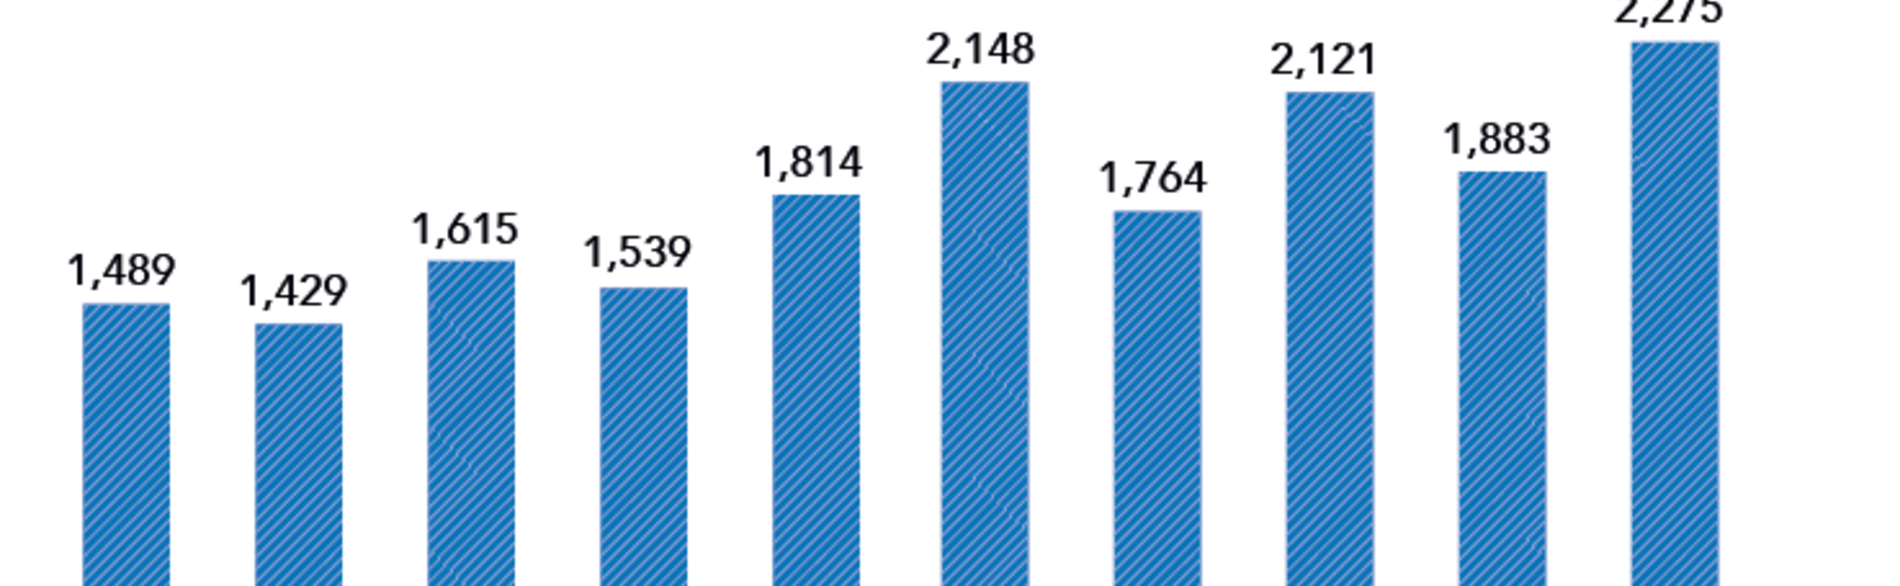 המספר הכולל של בקשות מטופלים להיתרים מדי חודש (ינו׳-אוק׳ 2015 )